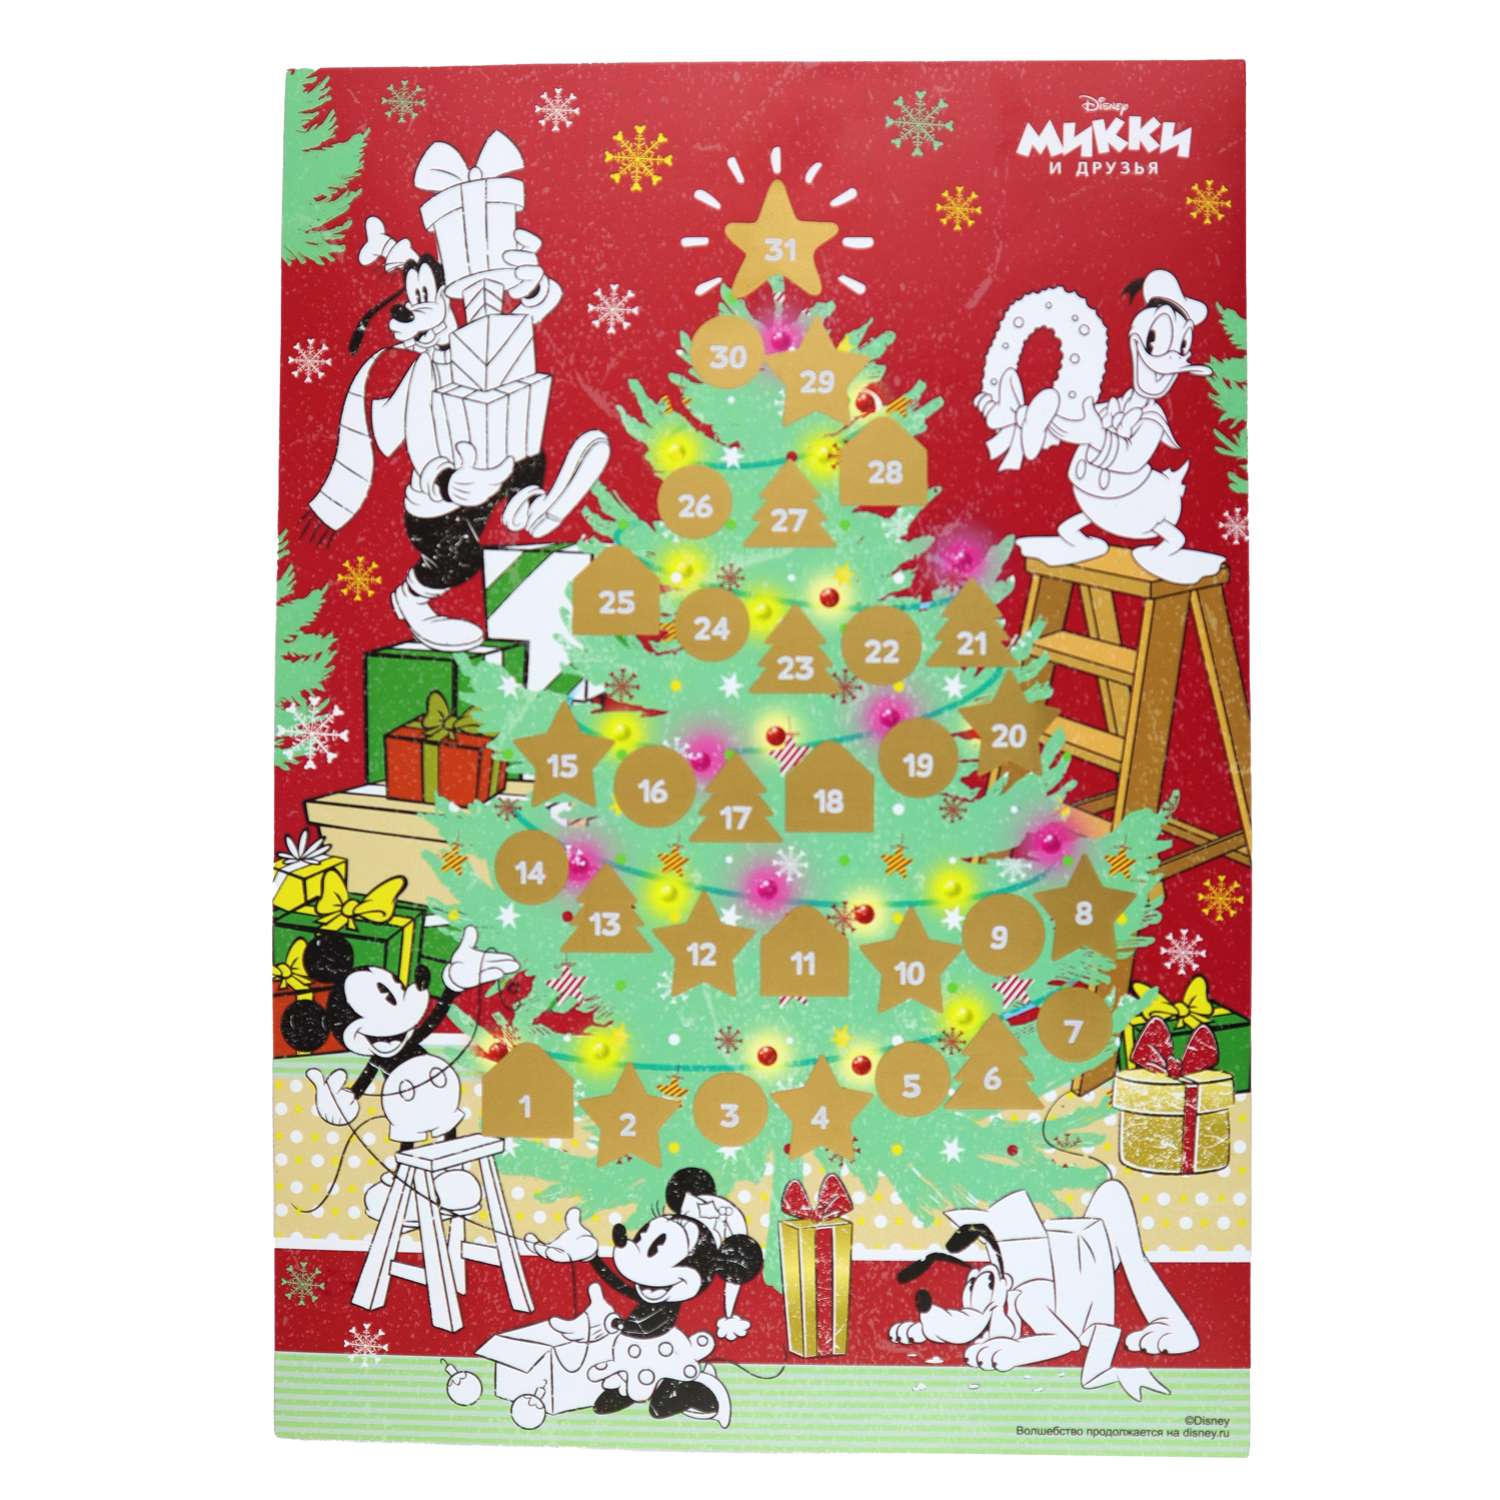 Адвент-календарь раскраска ND PLAY Микки и друзья с маркировкой Disney (дизайн 2) - фото 1